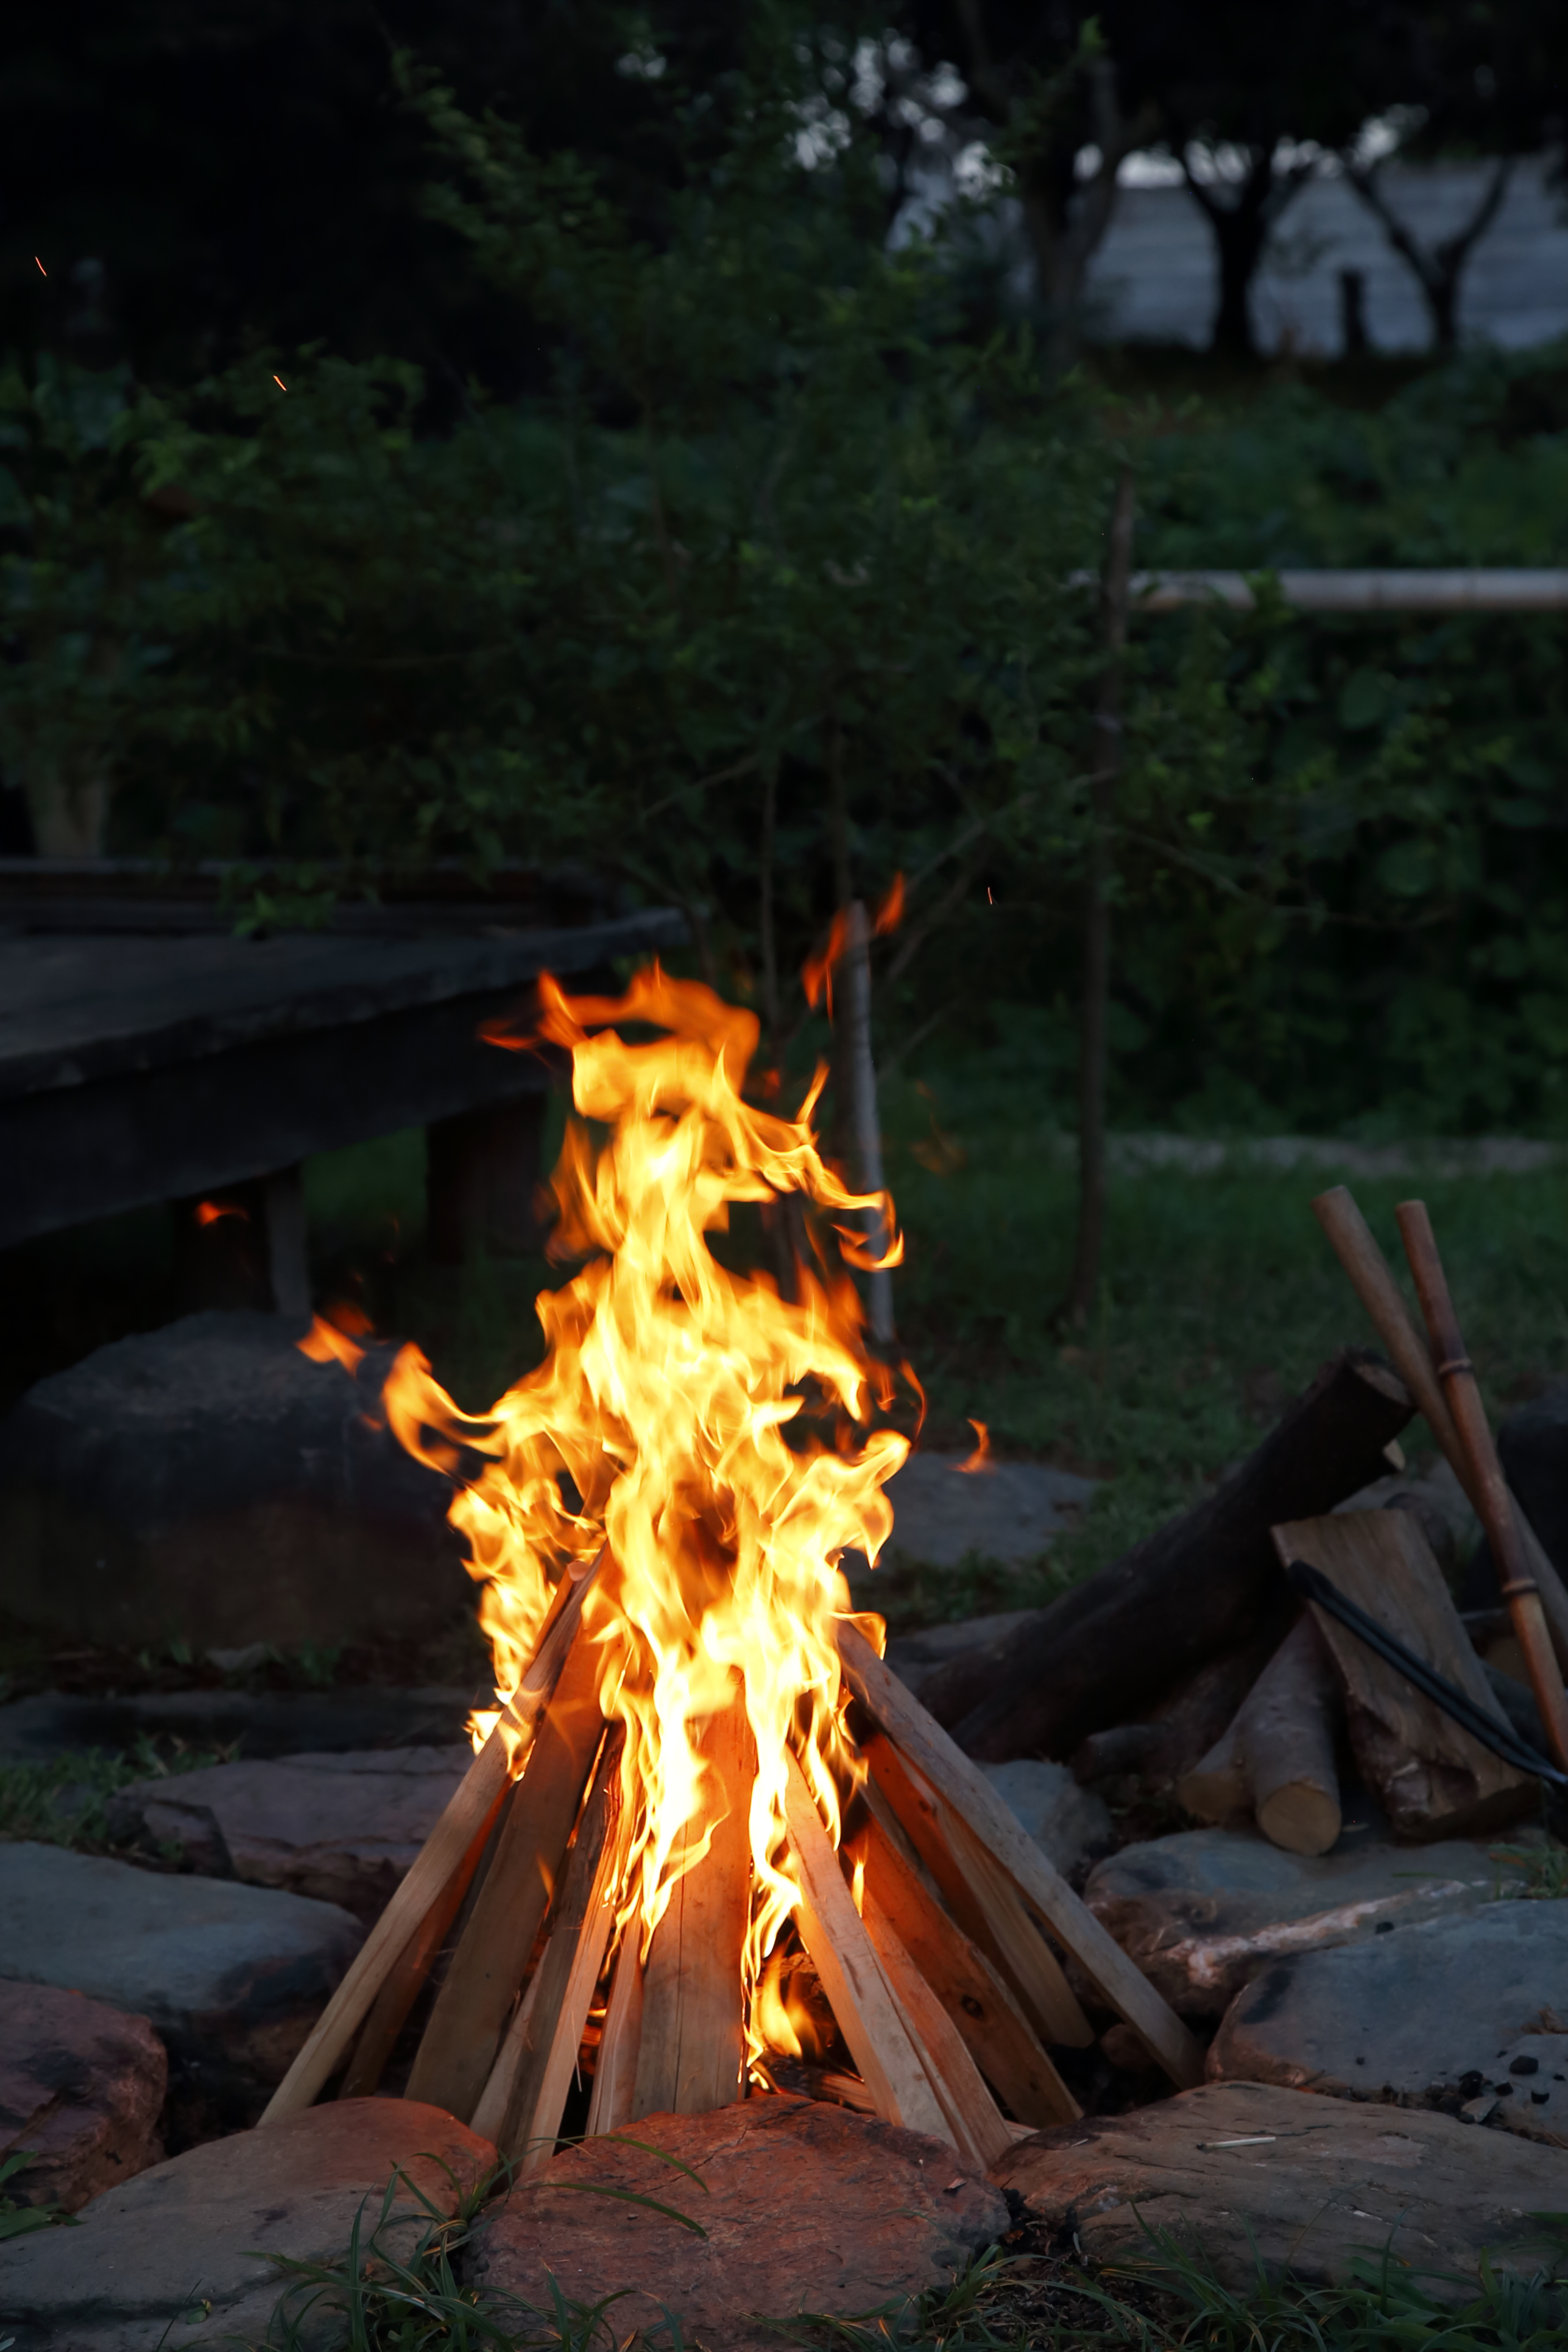 焚き火を楽しむための薪の選び方 組み方 燃やし方 焚き火のコツ Be Pal キャンプ アウトドア 自然派生活の情報源ビーパル